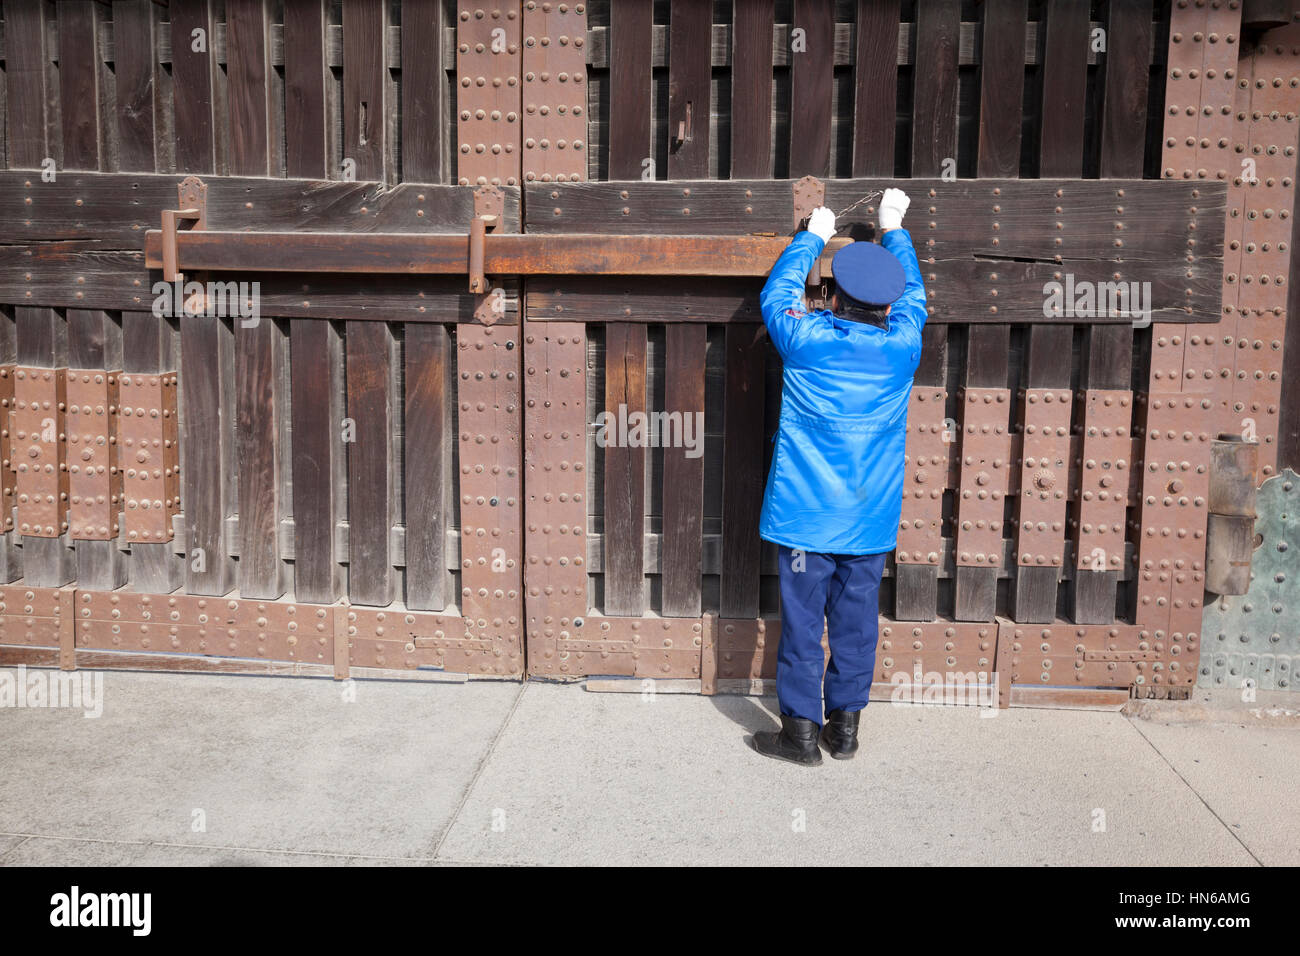 Kyoto, Japon - 19 mars 2012 : un gardien de sécurité dans un uniforme bleu verrouille la grande porte d'entrée pour le château de Nijo à Kyoto, au Japon. Banque D'Images